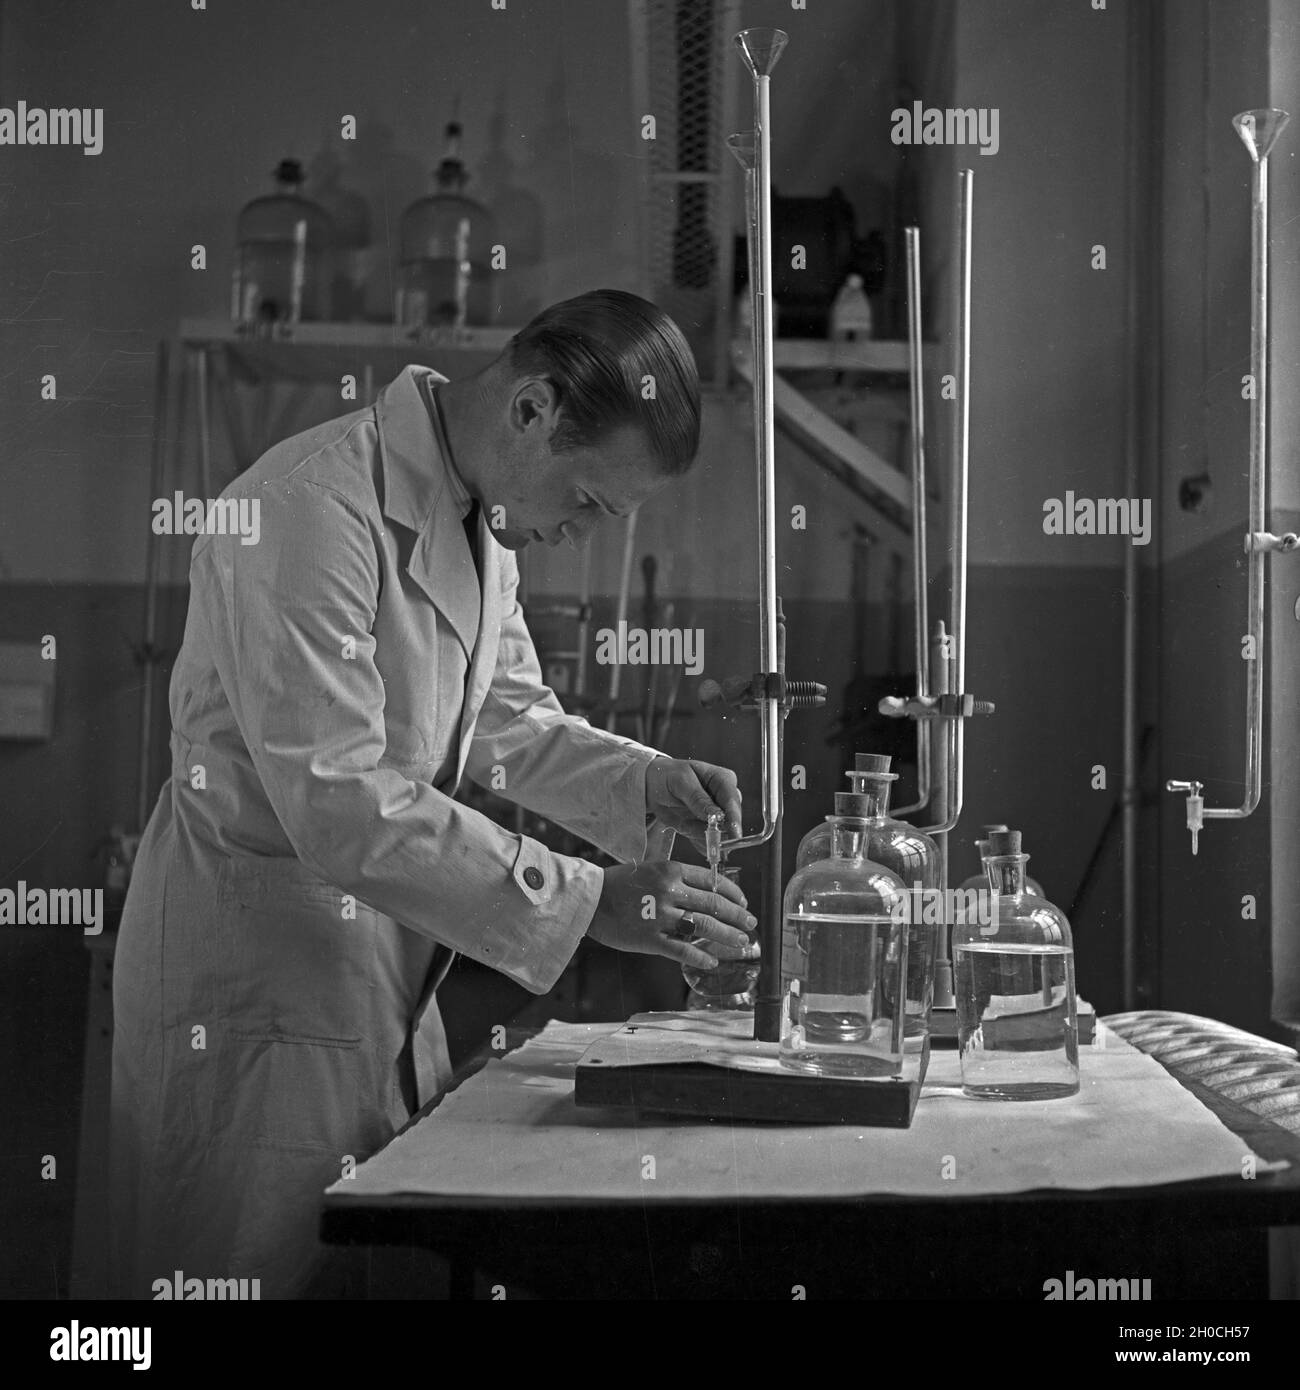 Ein wissenschaftlicher Mitarbeiter prüft Cheimkalien im Labour, Deutschland 1930er Jahre.Un membre du personnel scientifique qui vérifie les produits chimiques au laboratoire, Allemagne des années 1930. Banque D'Images